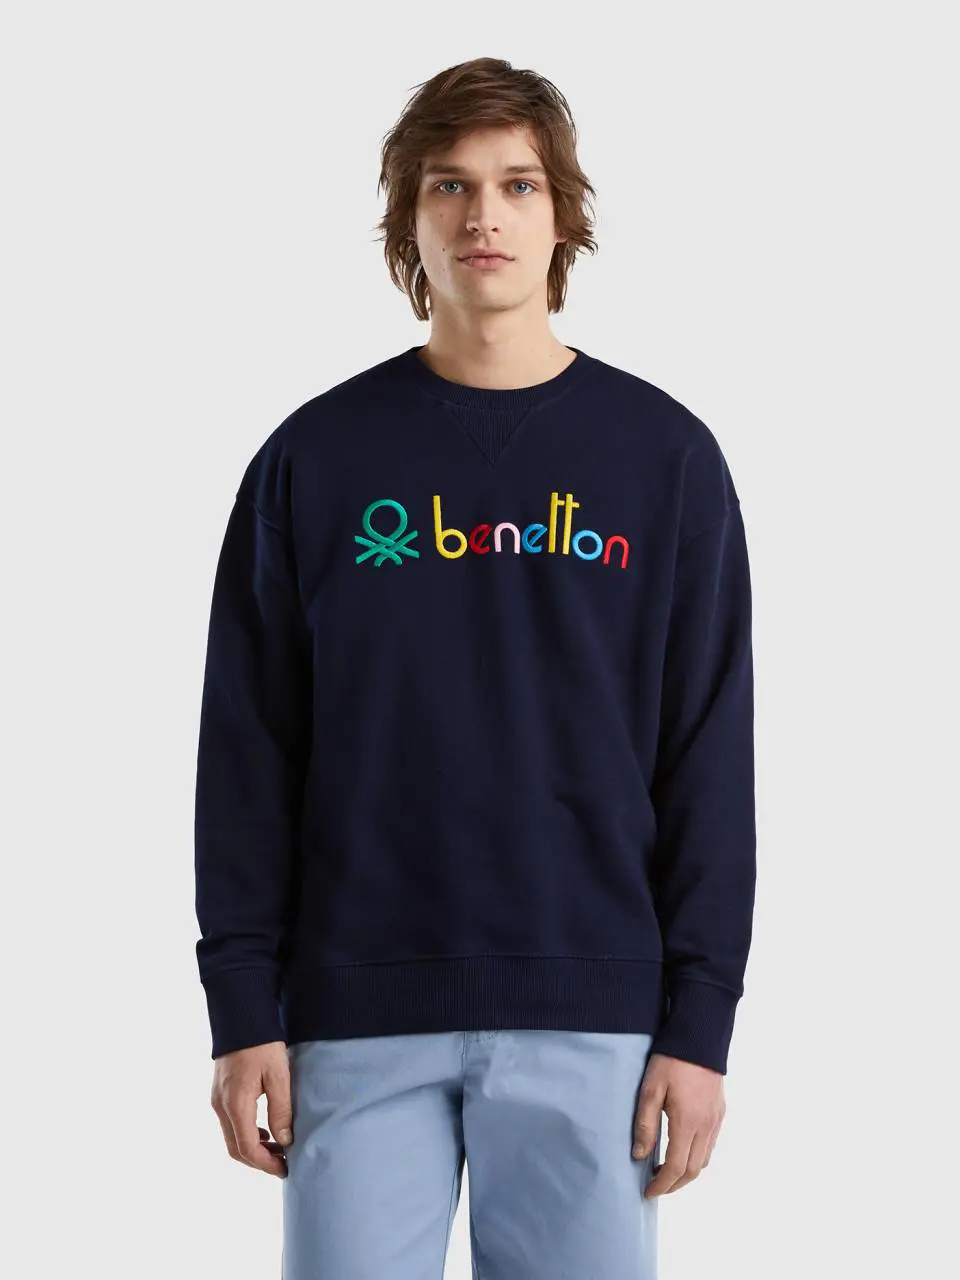 Benetton logoed 100% cotton sweatshirt. 1